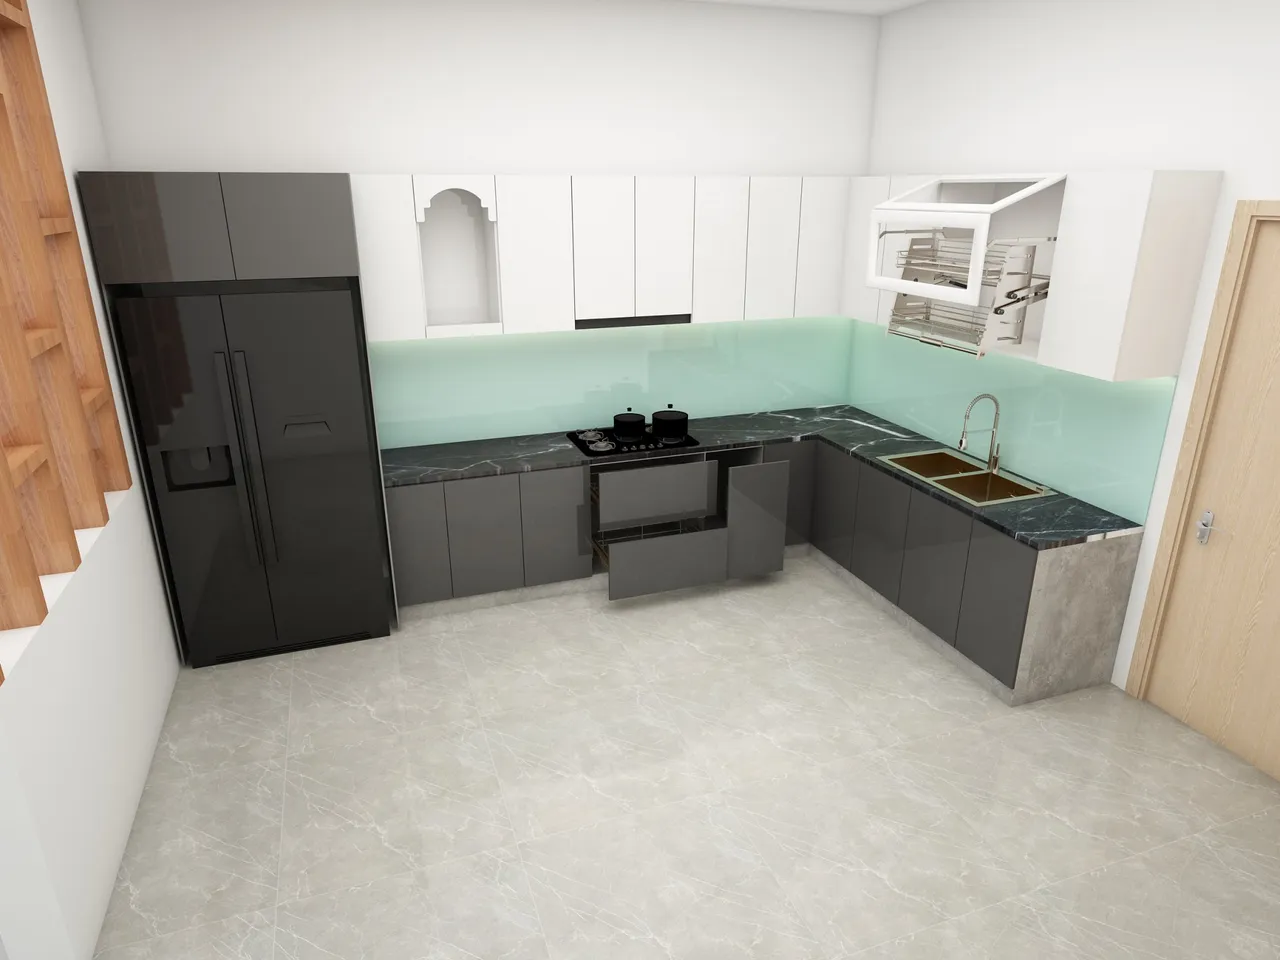 Concept nội thất nhà bếp Nhà phố Quận 12 phong cách Tối giản Minimalist